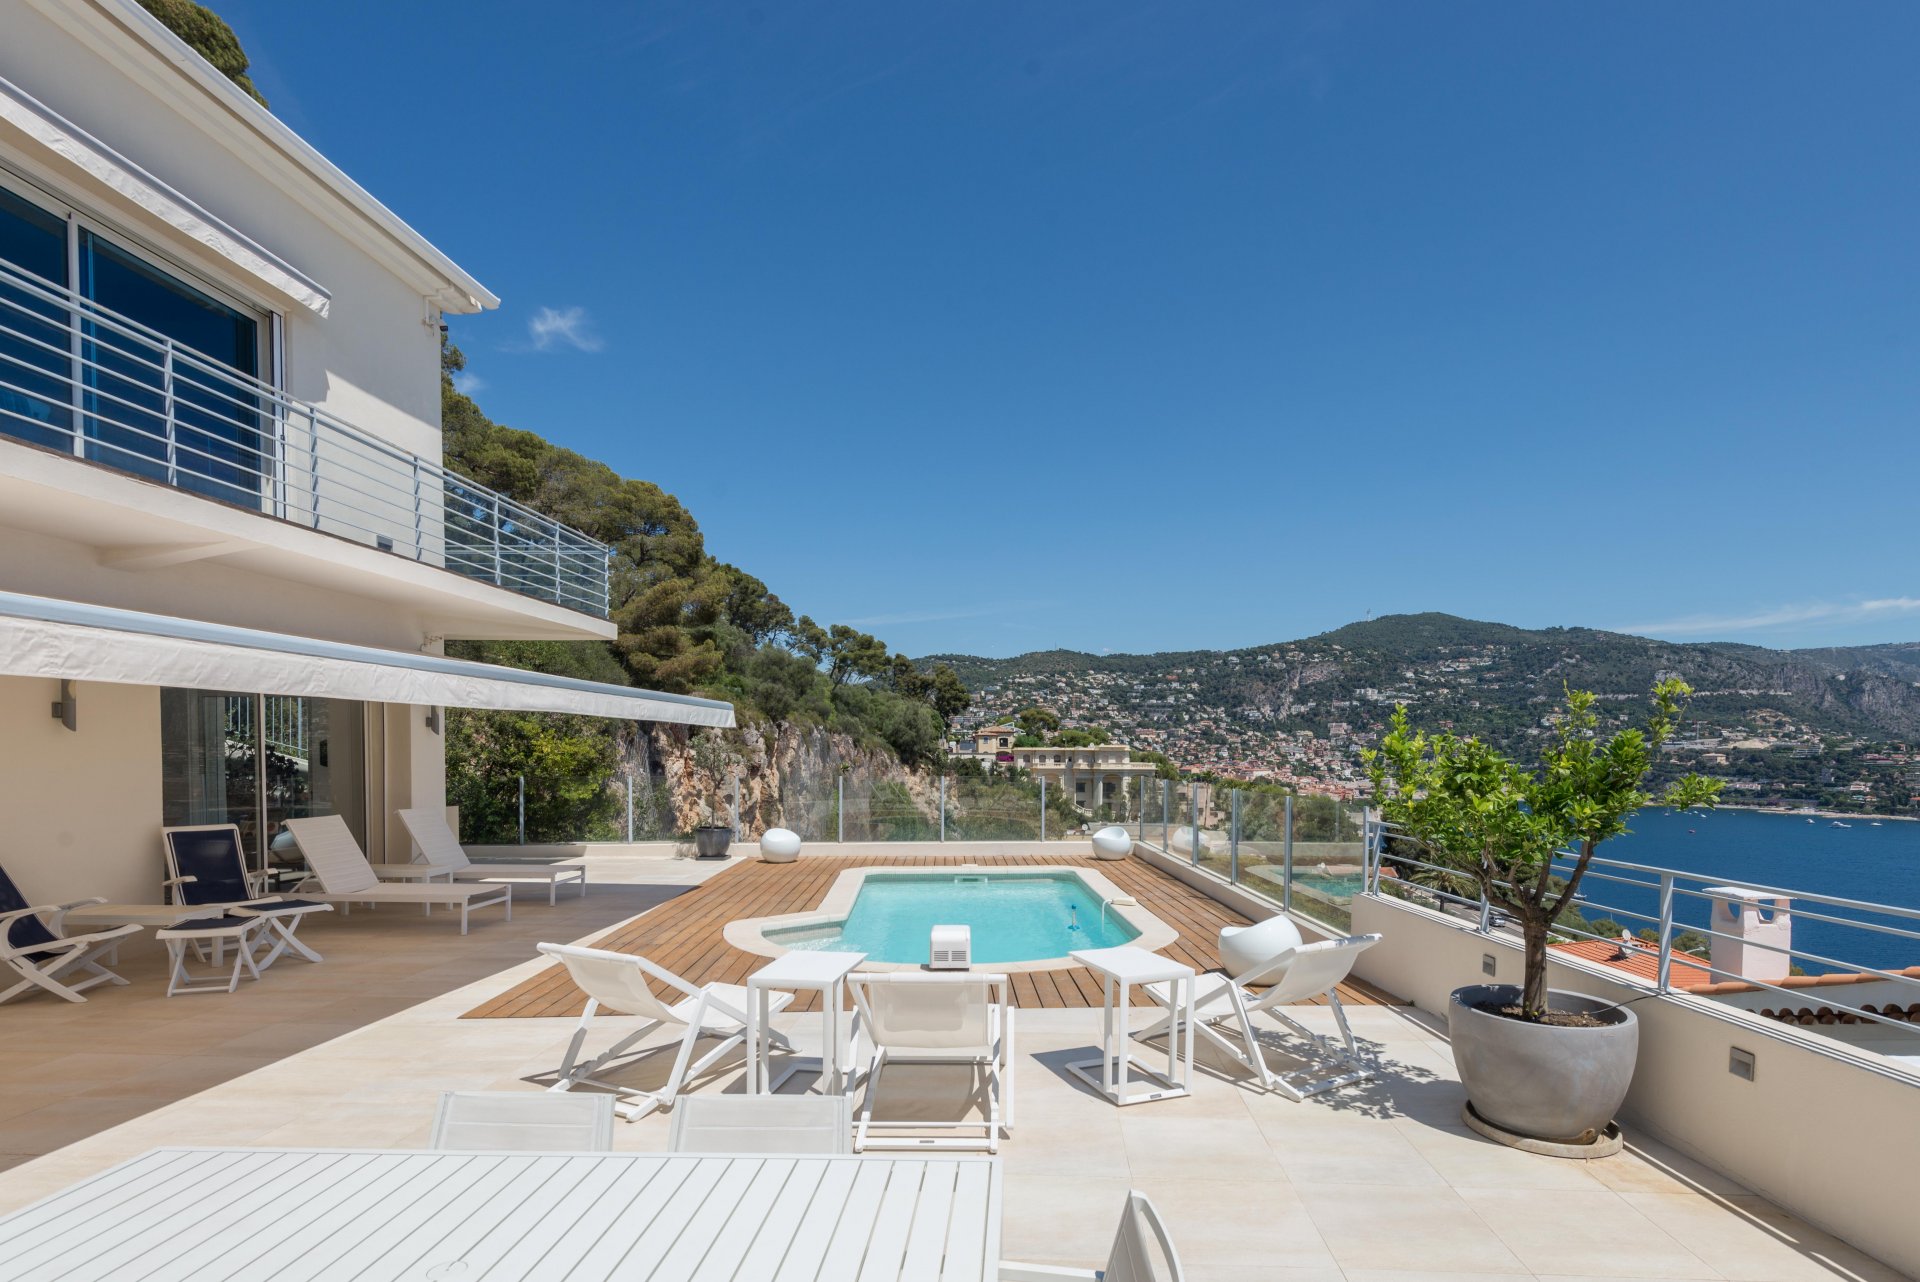 A modern style  villa overlooking Cap Ferrat